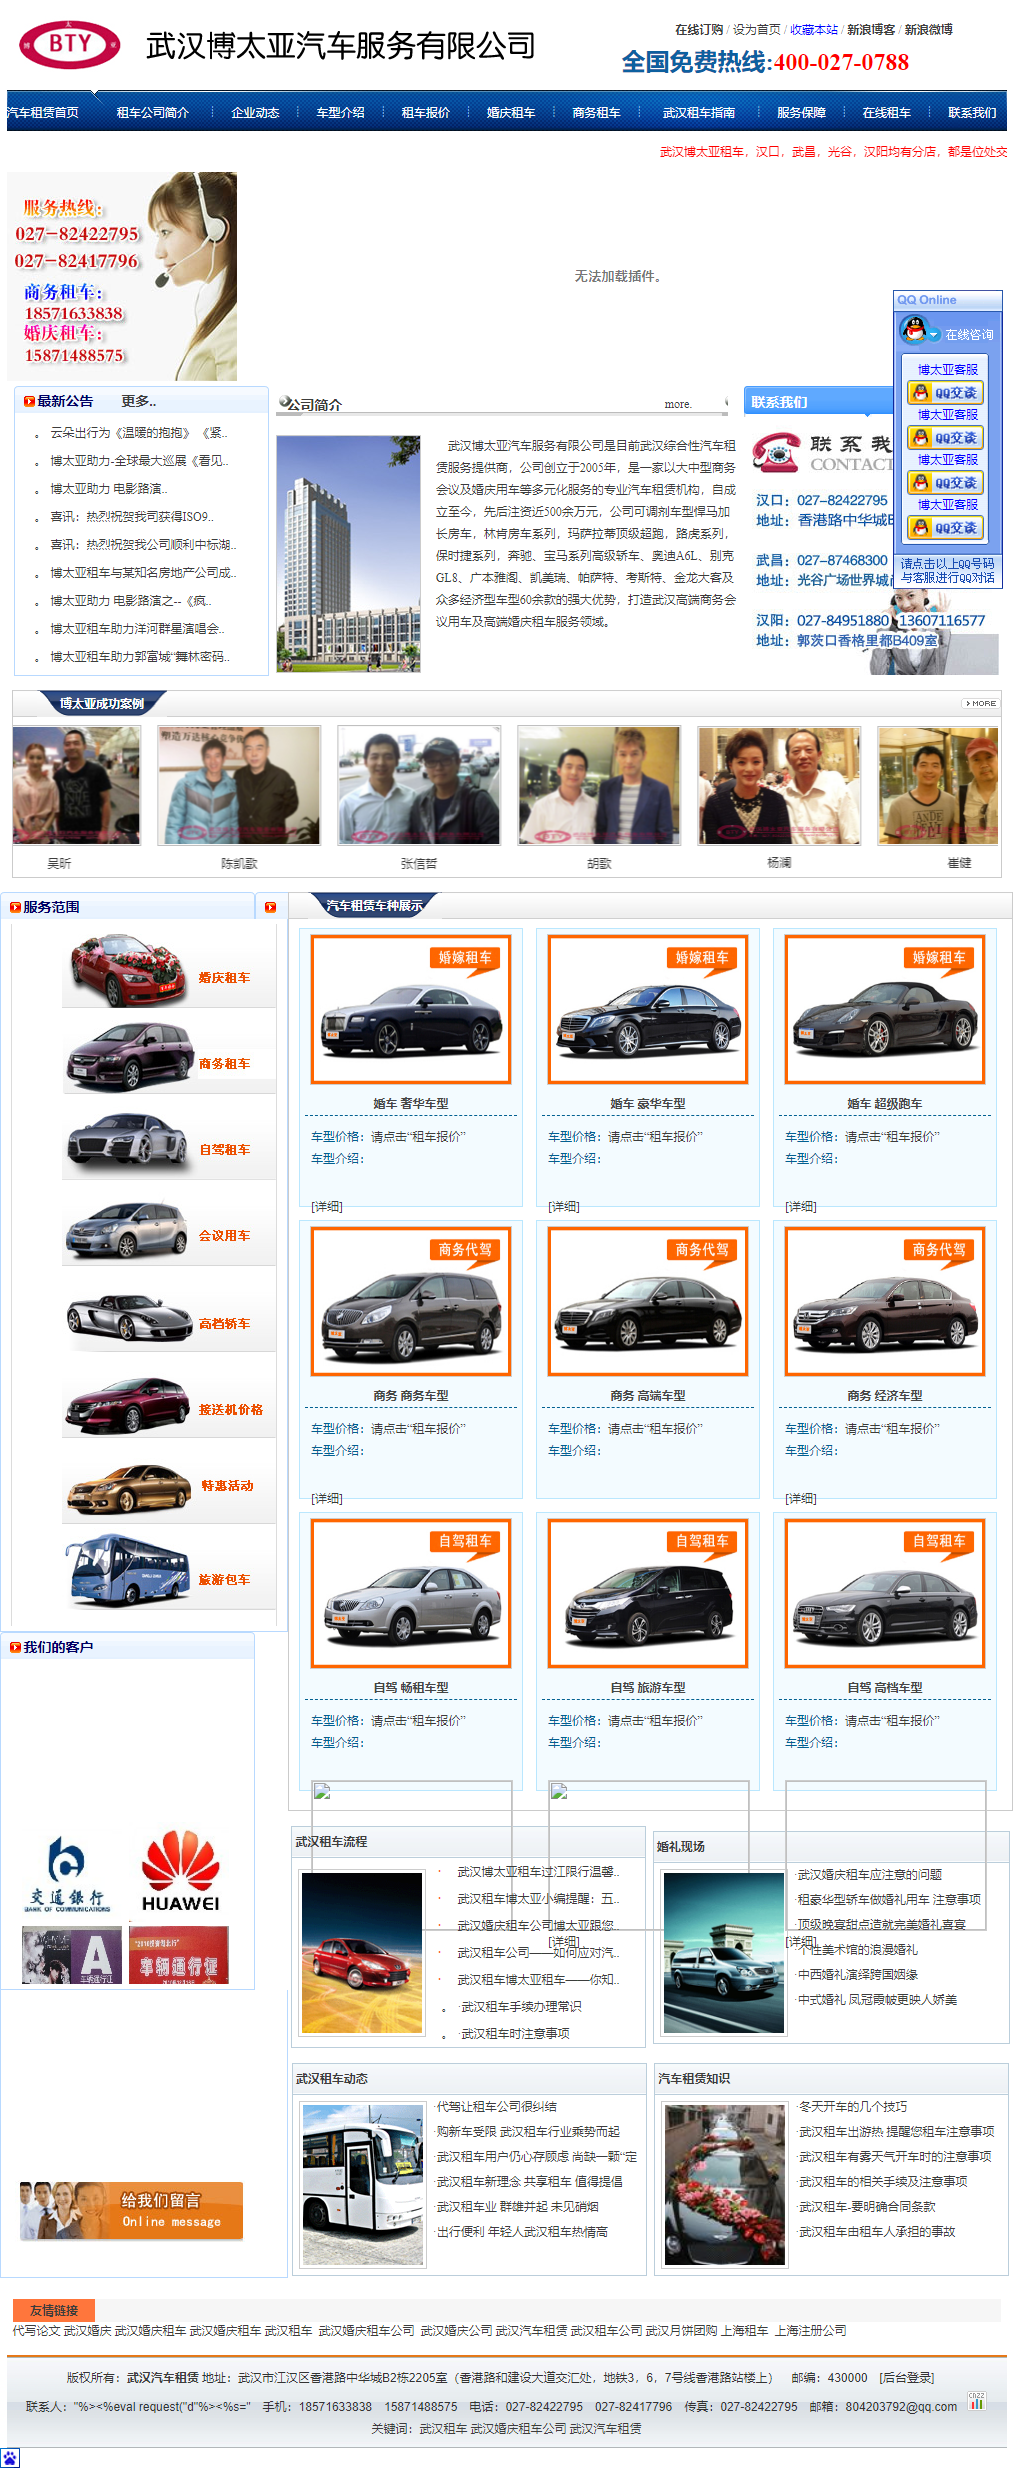 武汉博太亚汽车服务有限公司网站案例